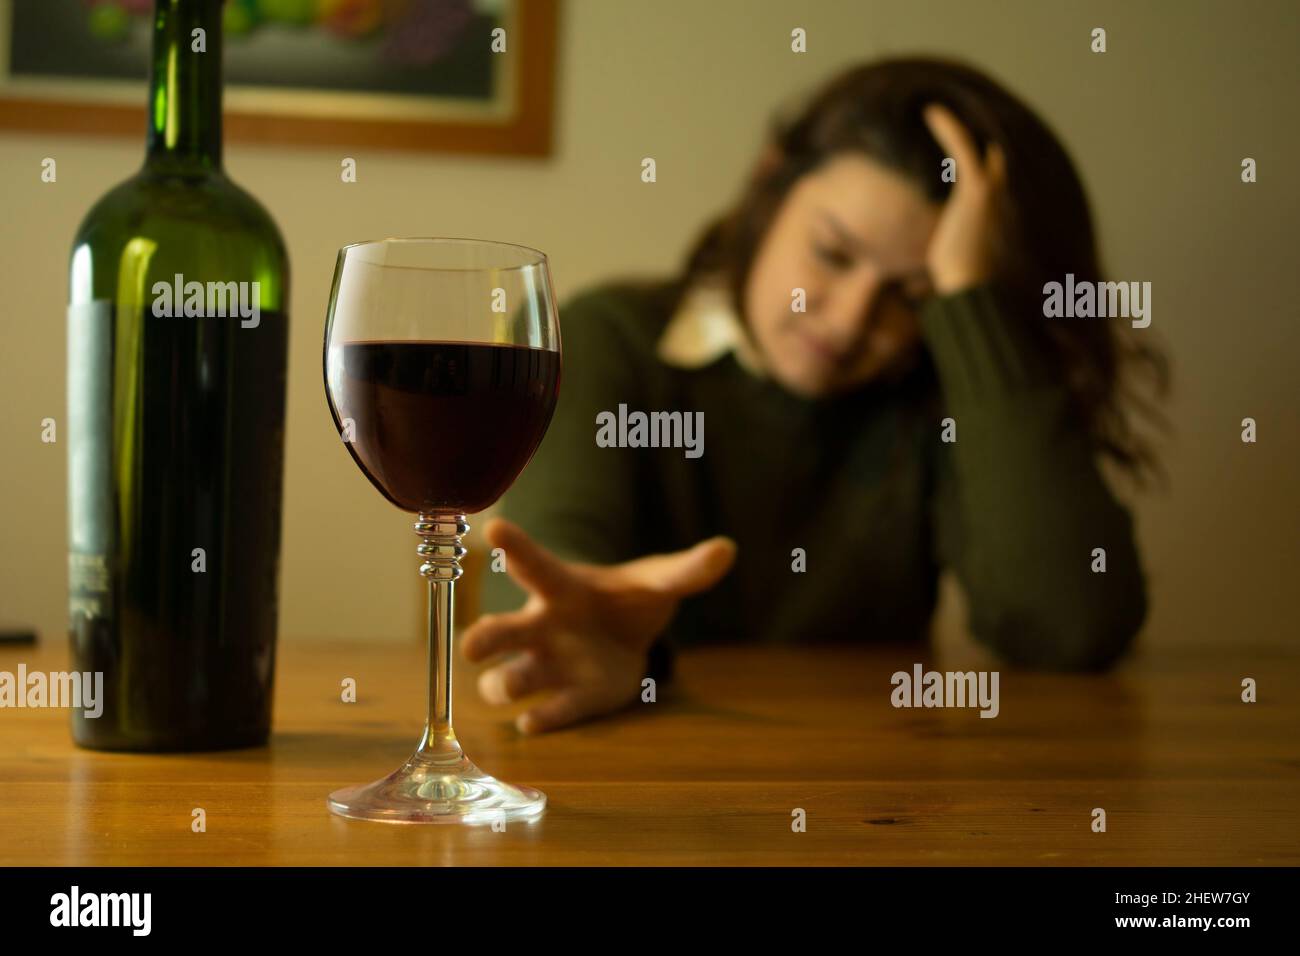 Primo piano su donna depressa con giacca verde seduta da sola ad un tavolo cercando di raggiungere un bicchiere di vino rosso con la mano Foto Stock